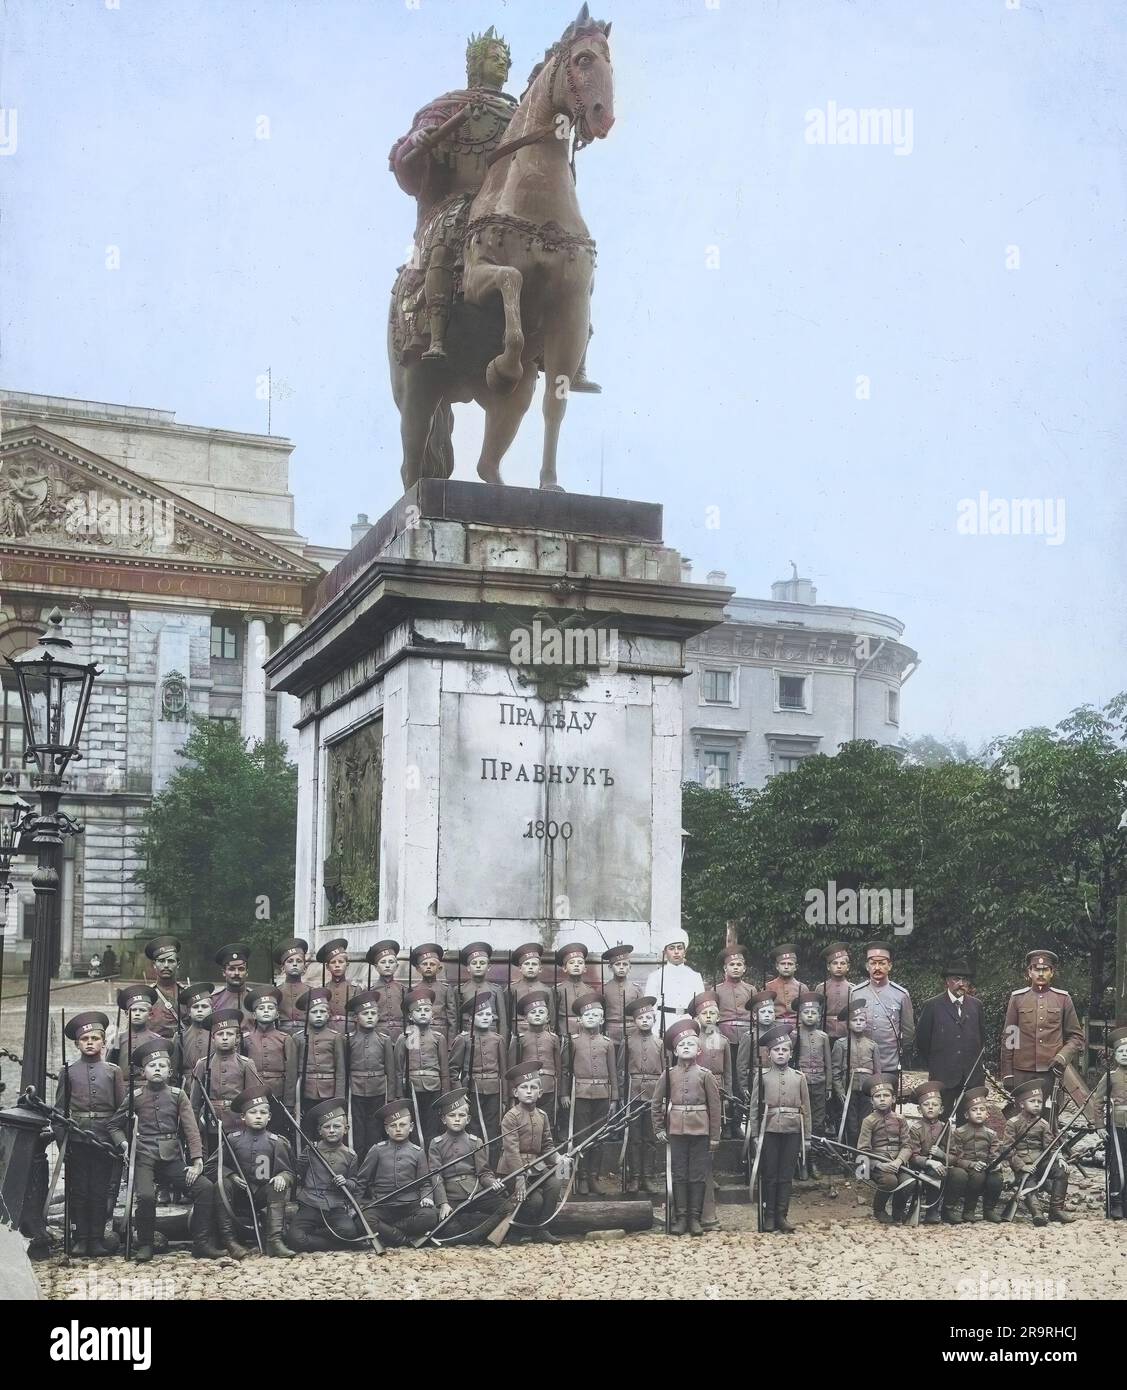 Ungefähr 1913 in Russland, eine Gruppe junger Militärkadetten, die für ein Klassenfoto unter der Statue von Peter I. posieren Stockfoto